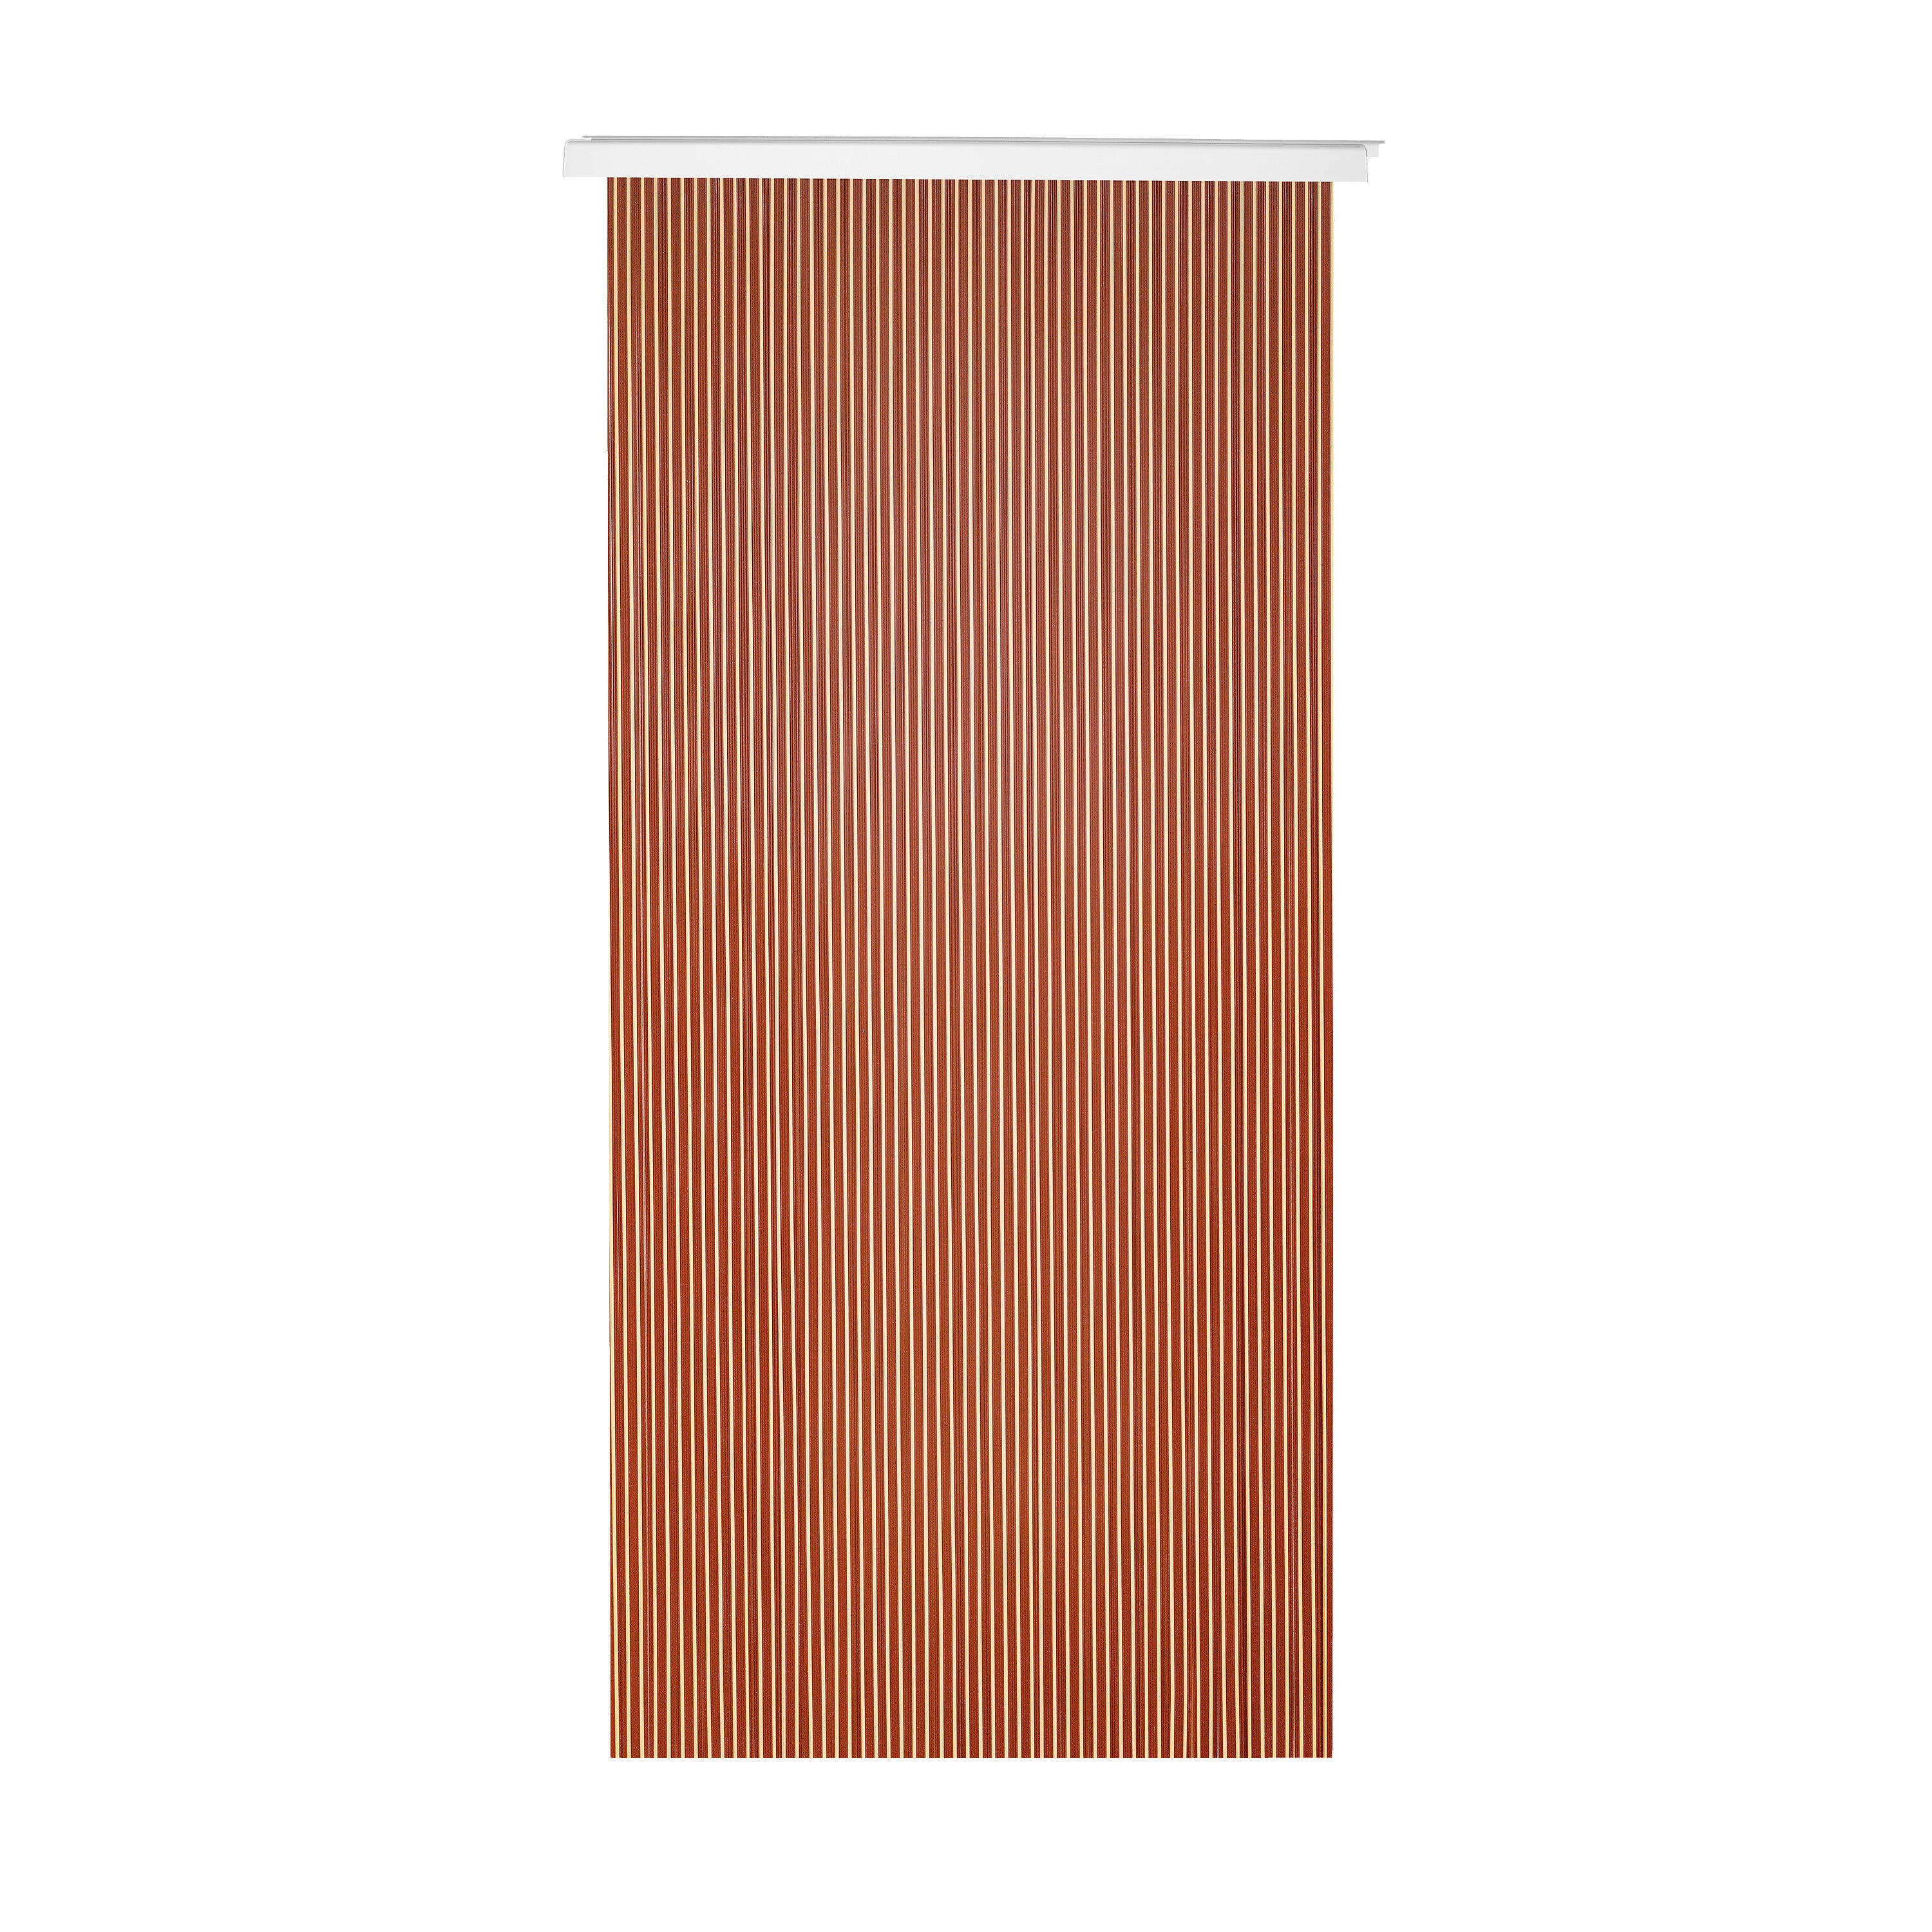 Cortina de puerta pvc guadiana marrón-beige 90 x 210 cm